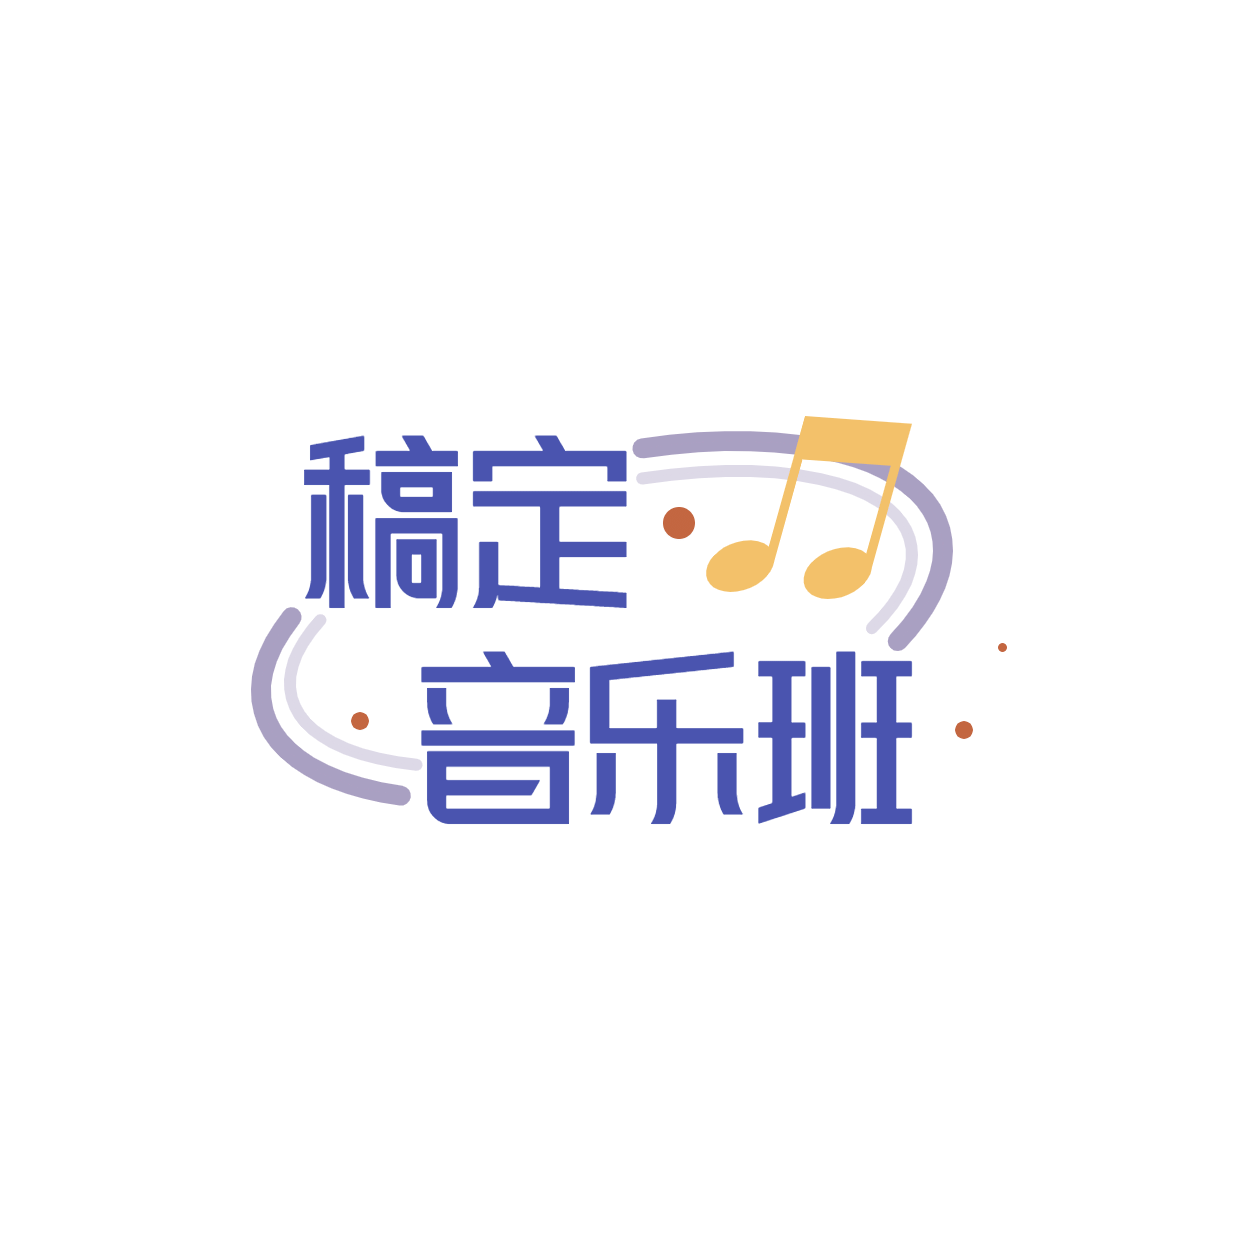 教育培训机构音乐班logo